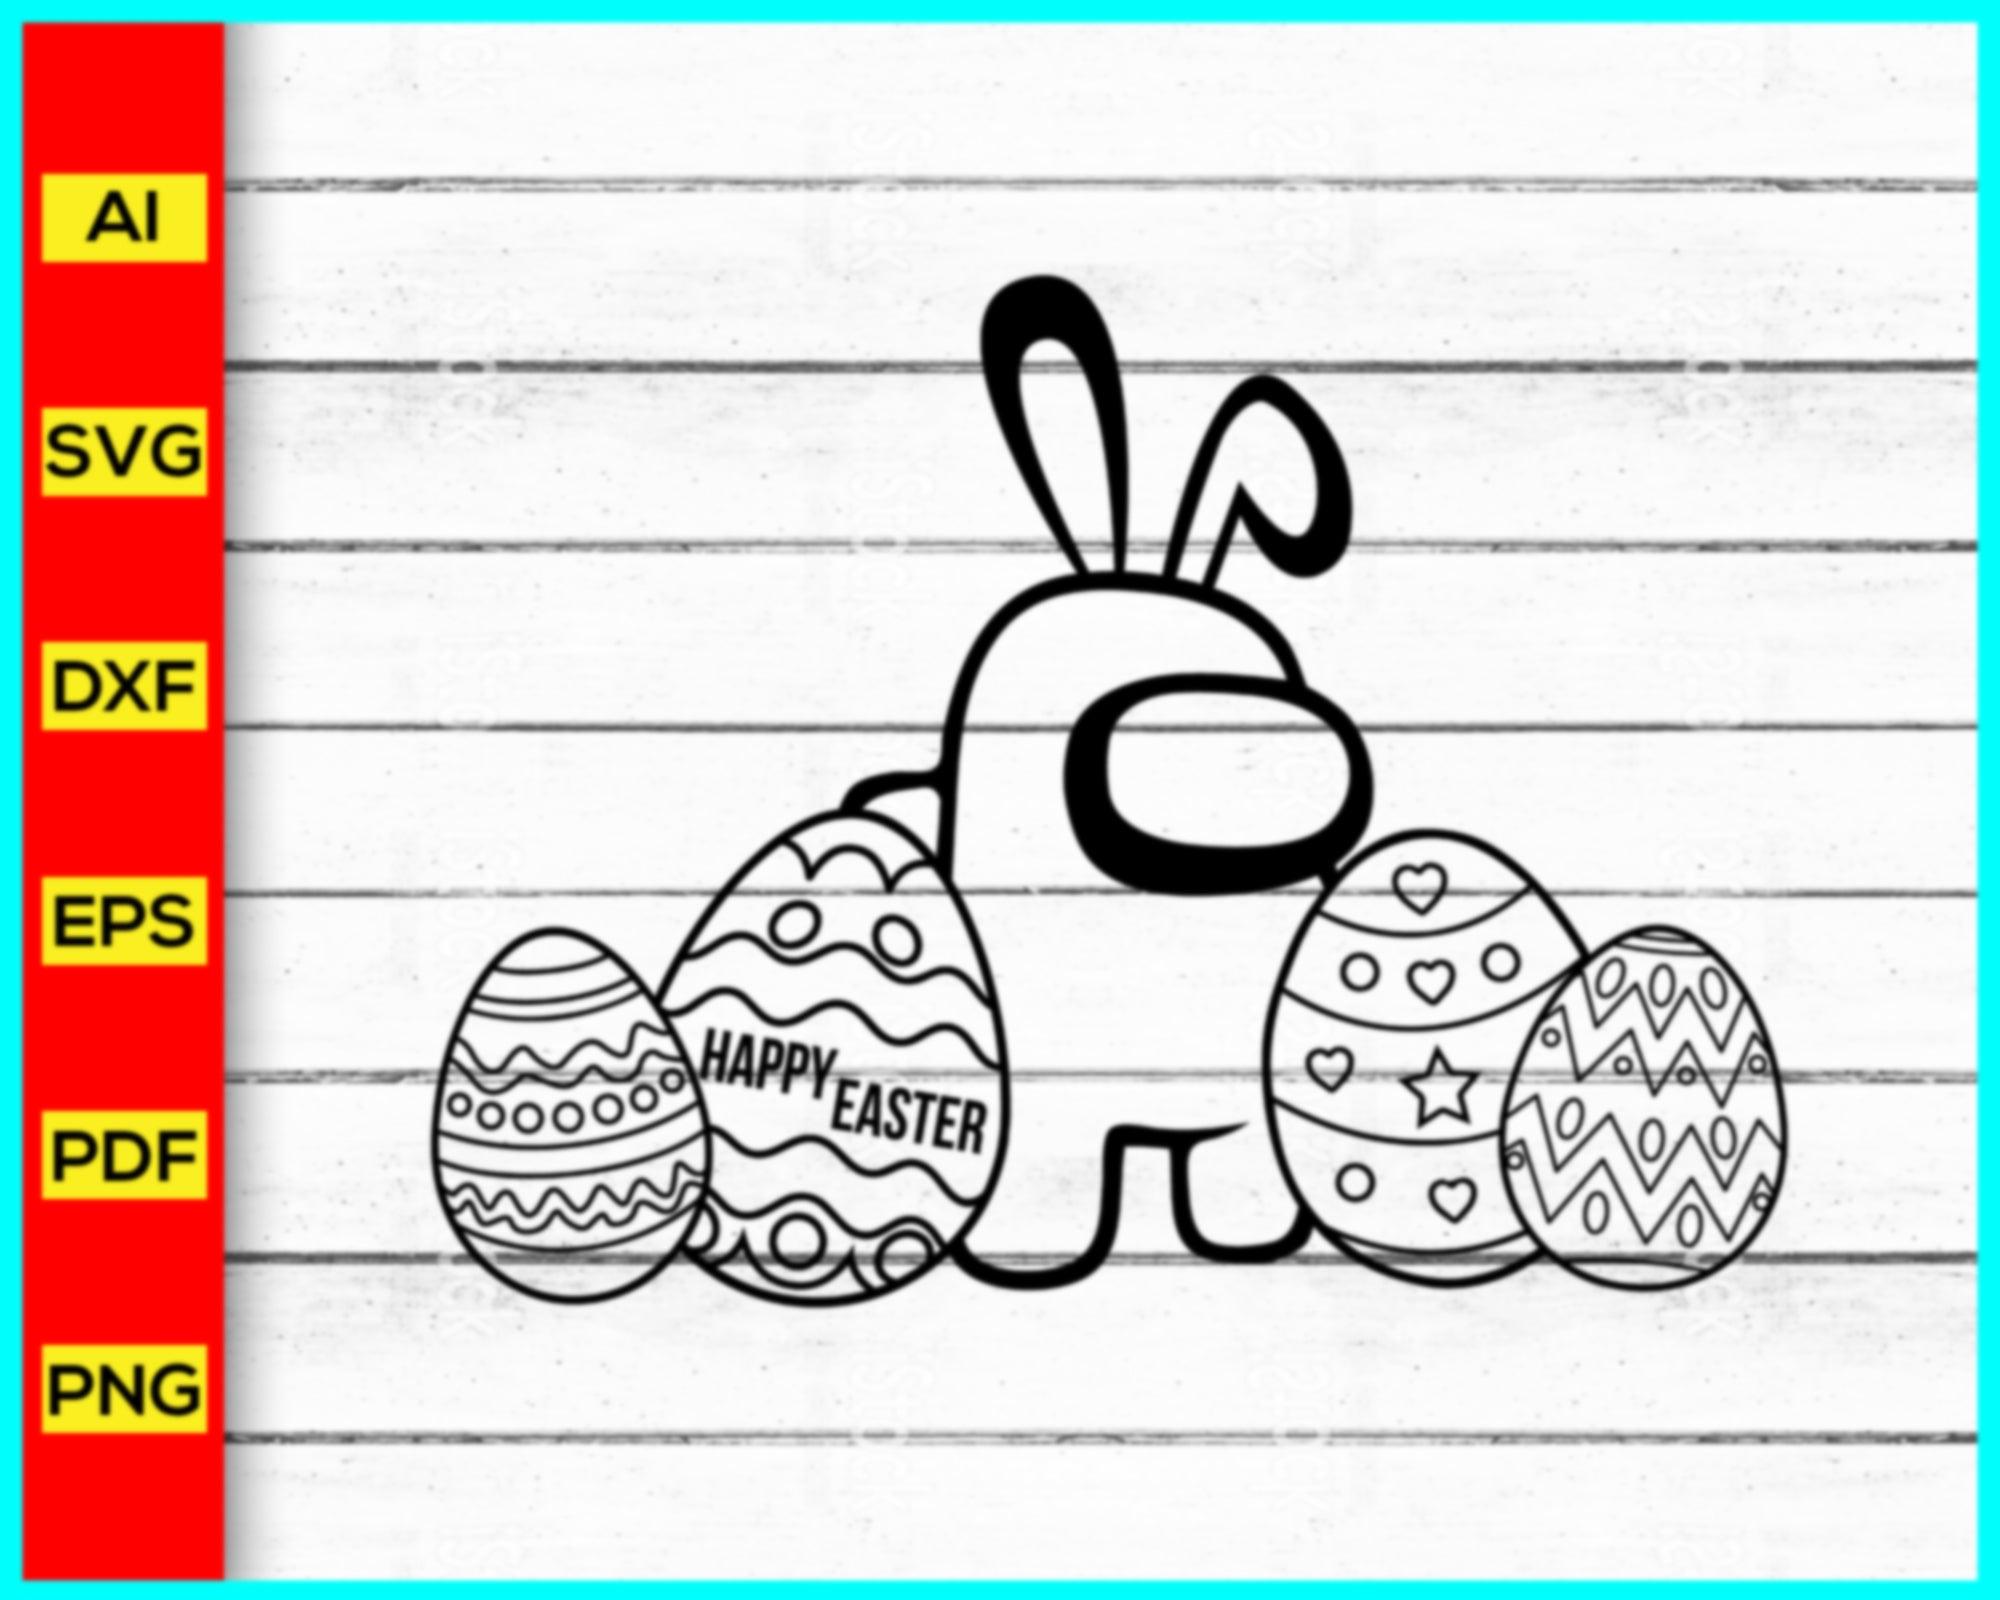 Bunny Kinda Sus Among Us Easter SVG Digital File, Easter SVG